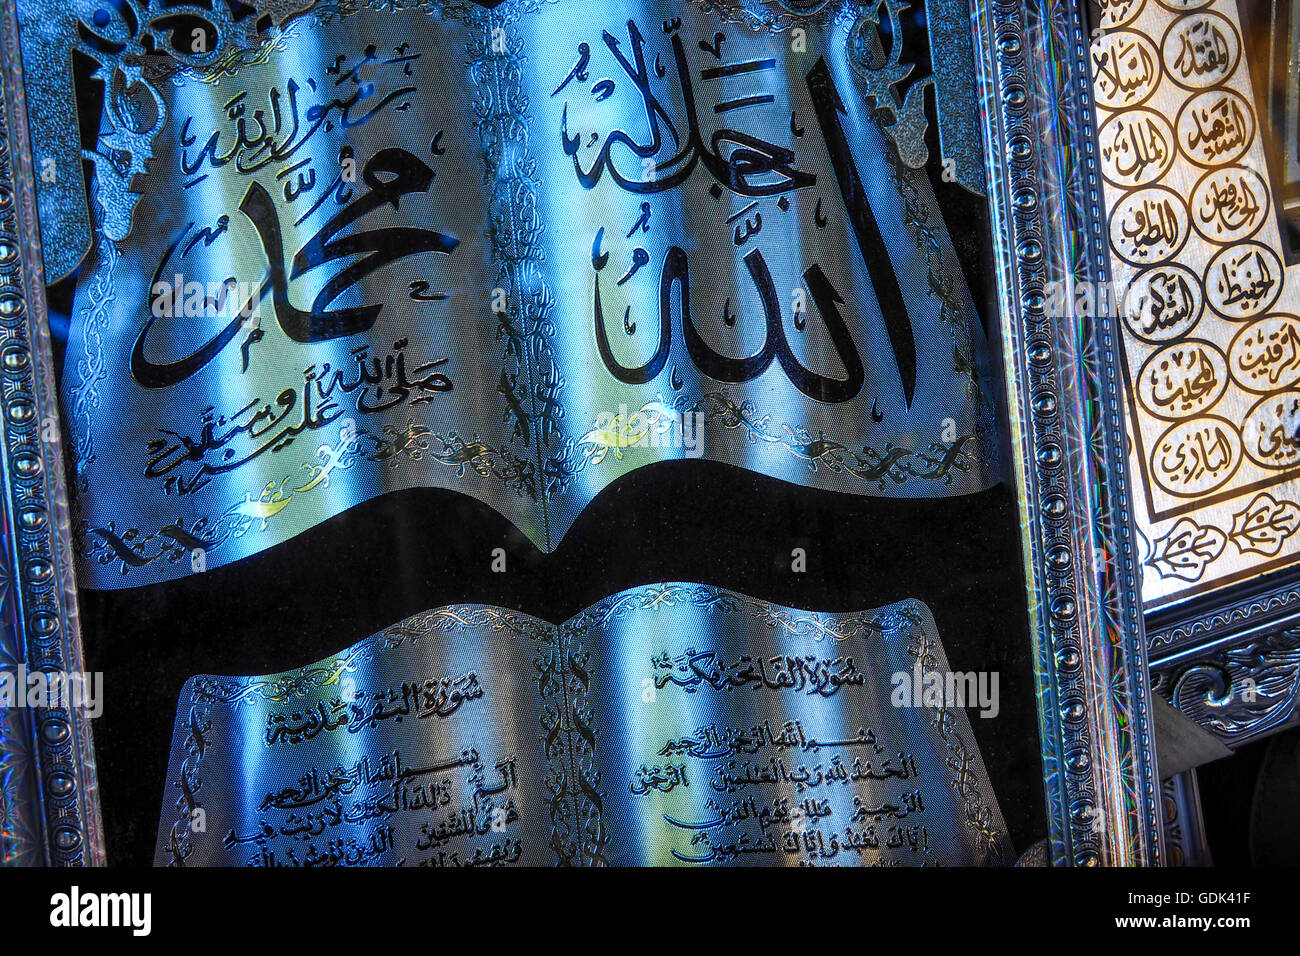 Teil der Heilige Koran und die 99 Namen von Allah, als Dekoration verwenden  Stockfotografie - Alamy